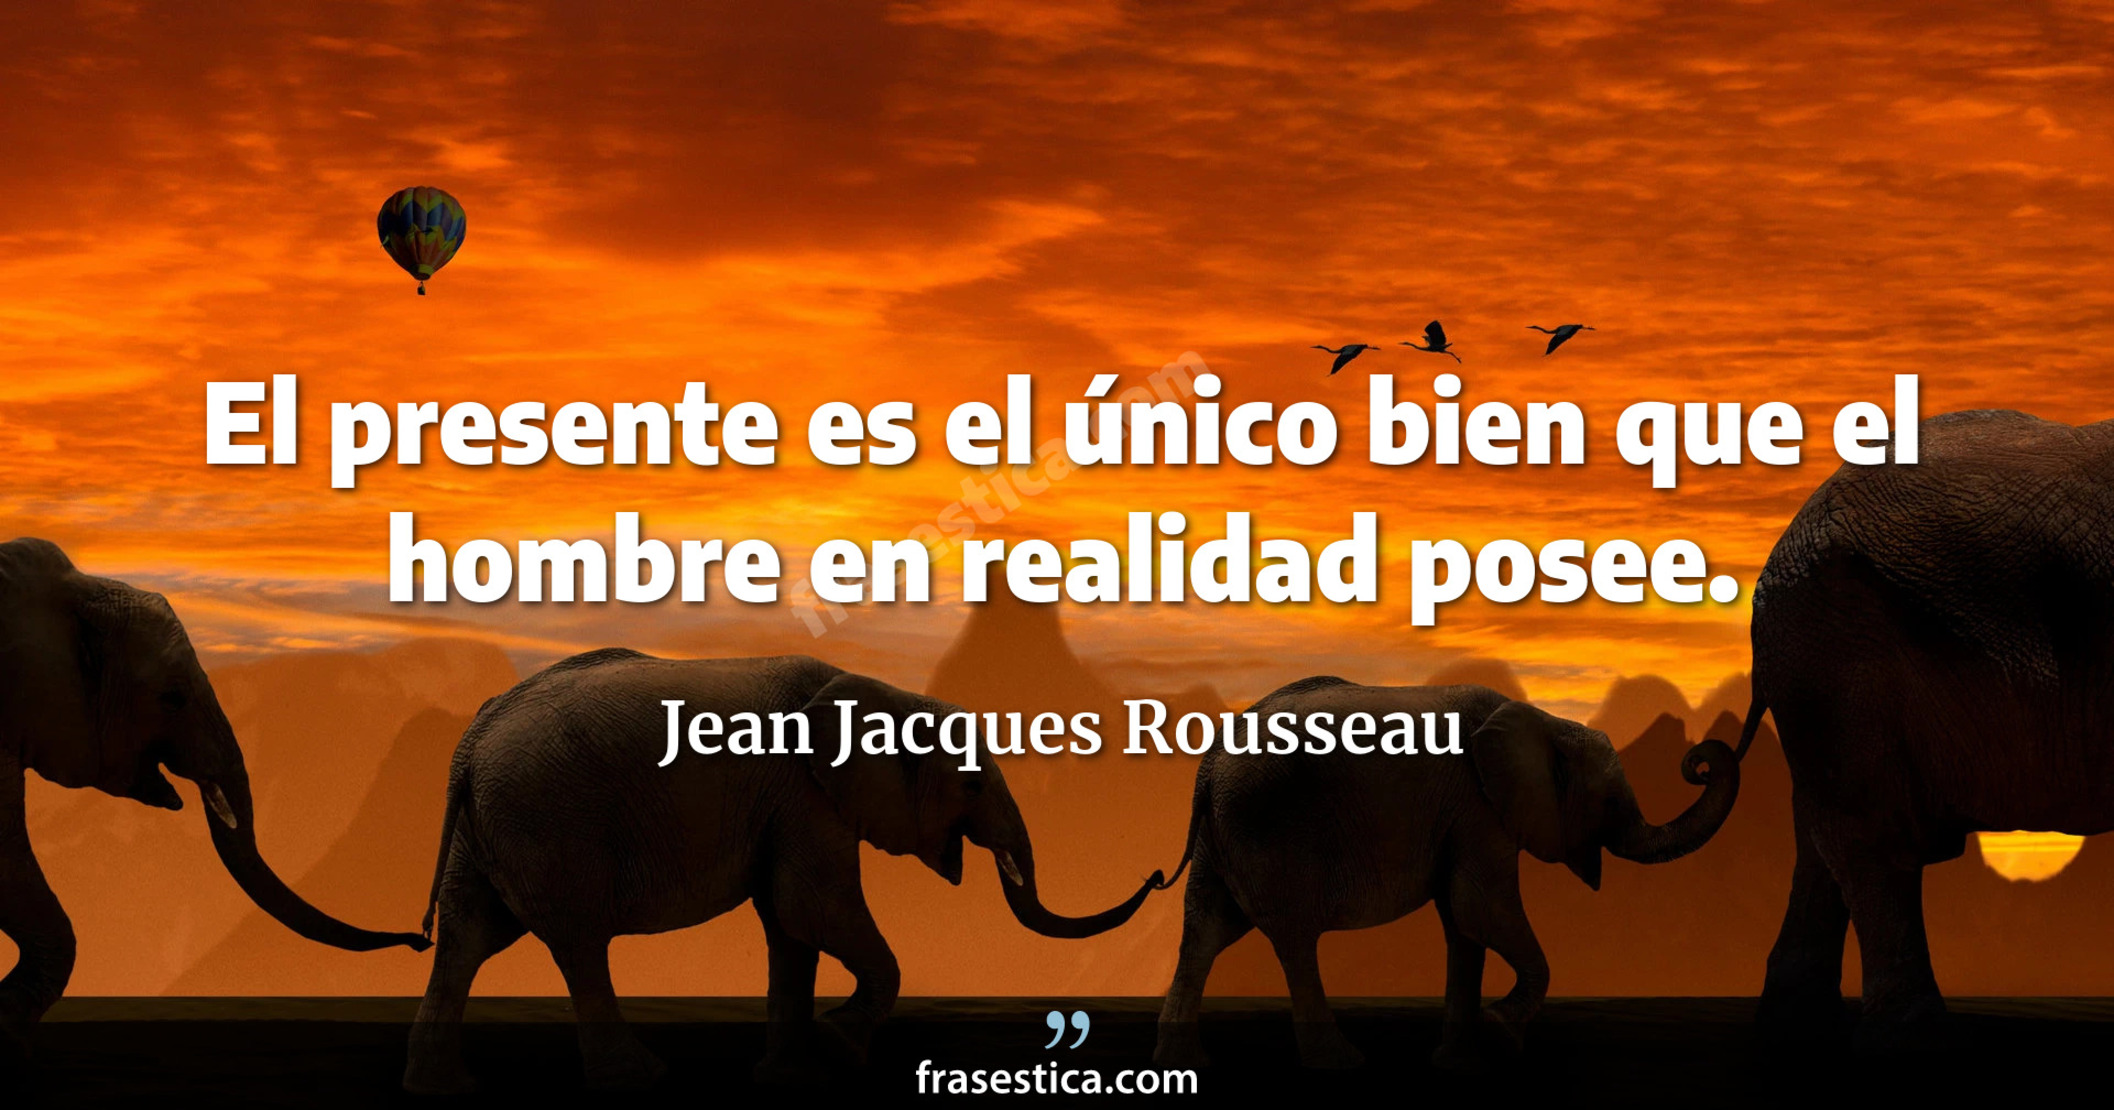 El presente es el único bien que el hombre en realidad posee. - Jean Jacques Rousseau